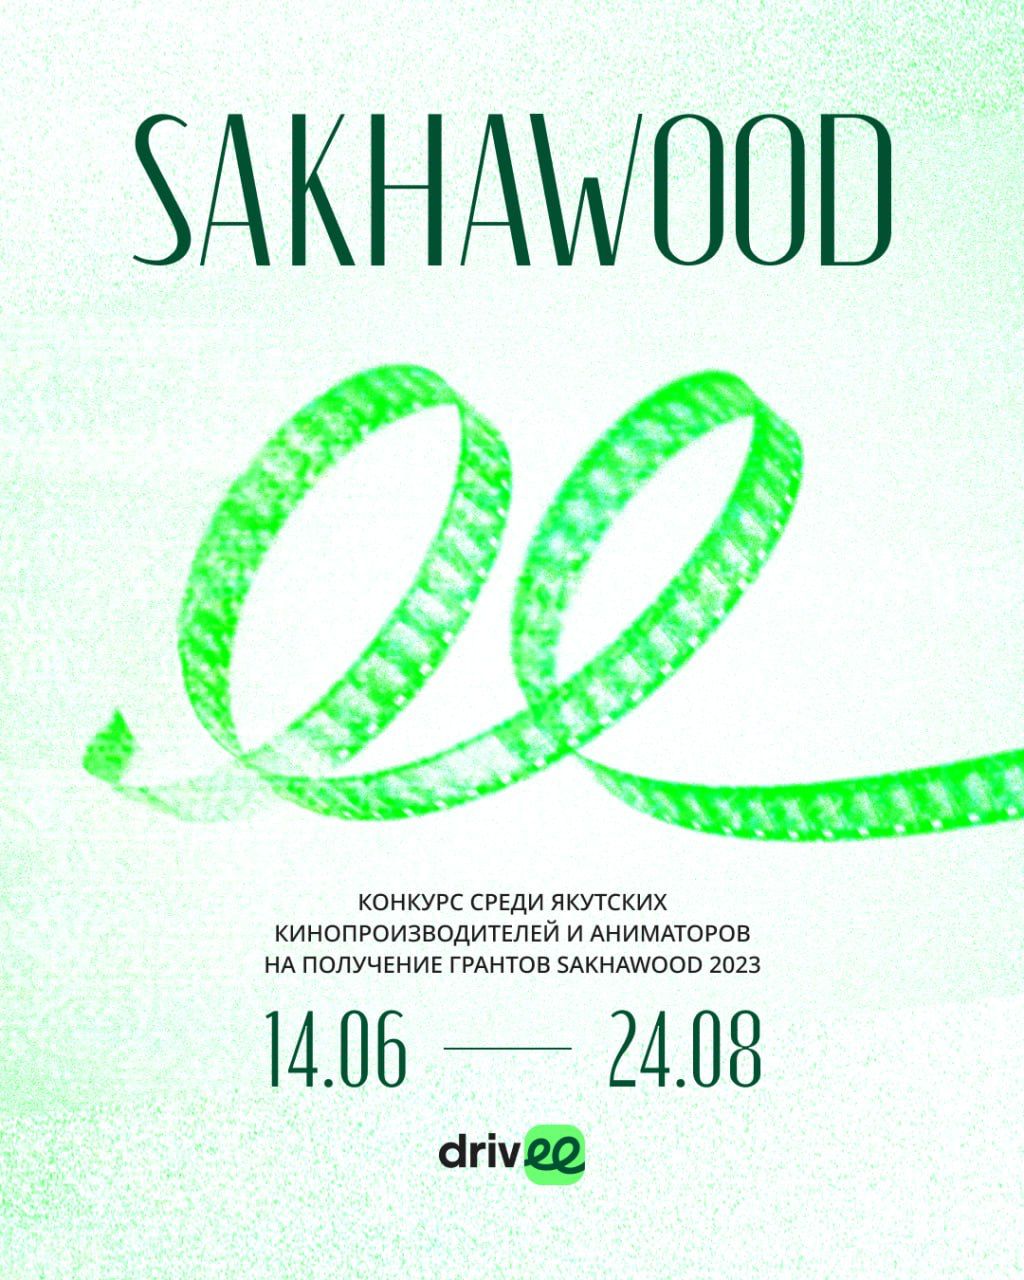 Sakhawood объявляет конкурс на получение гранта